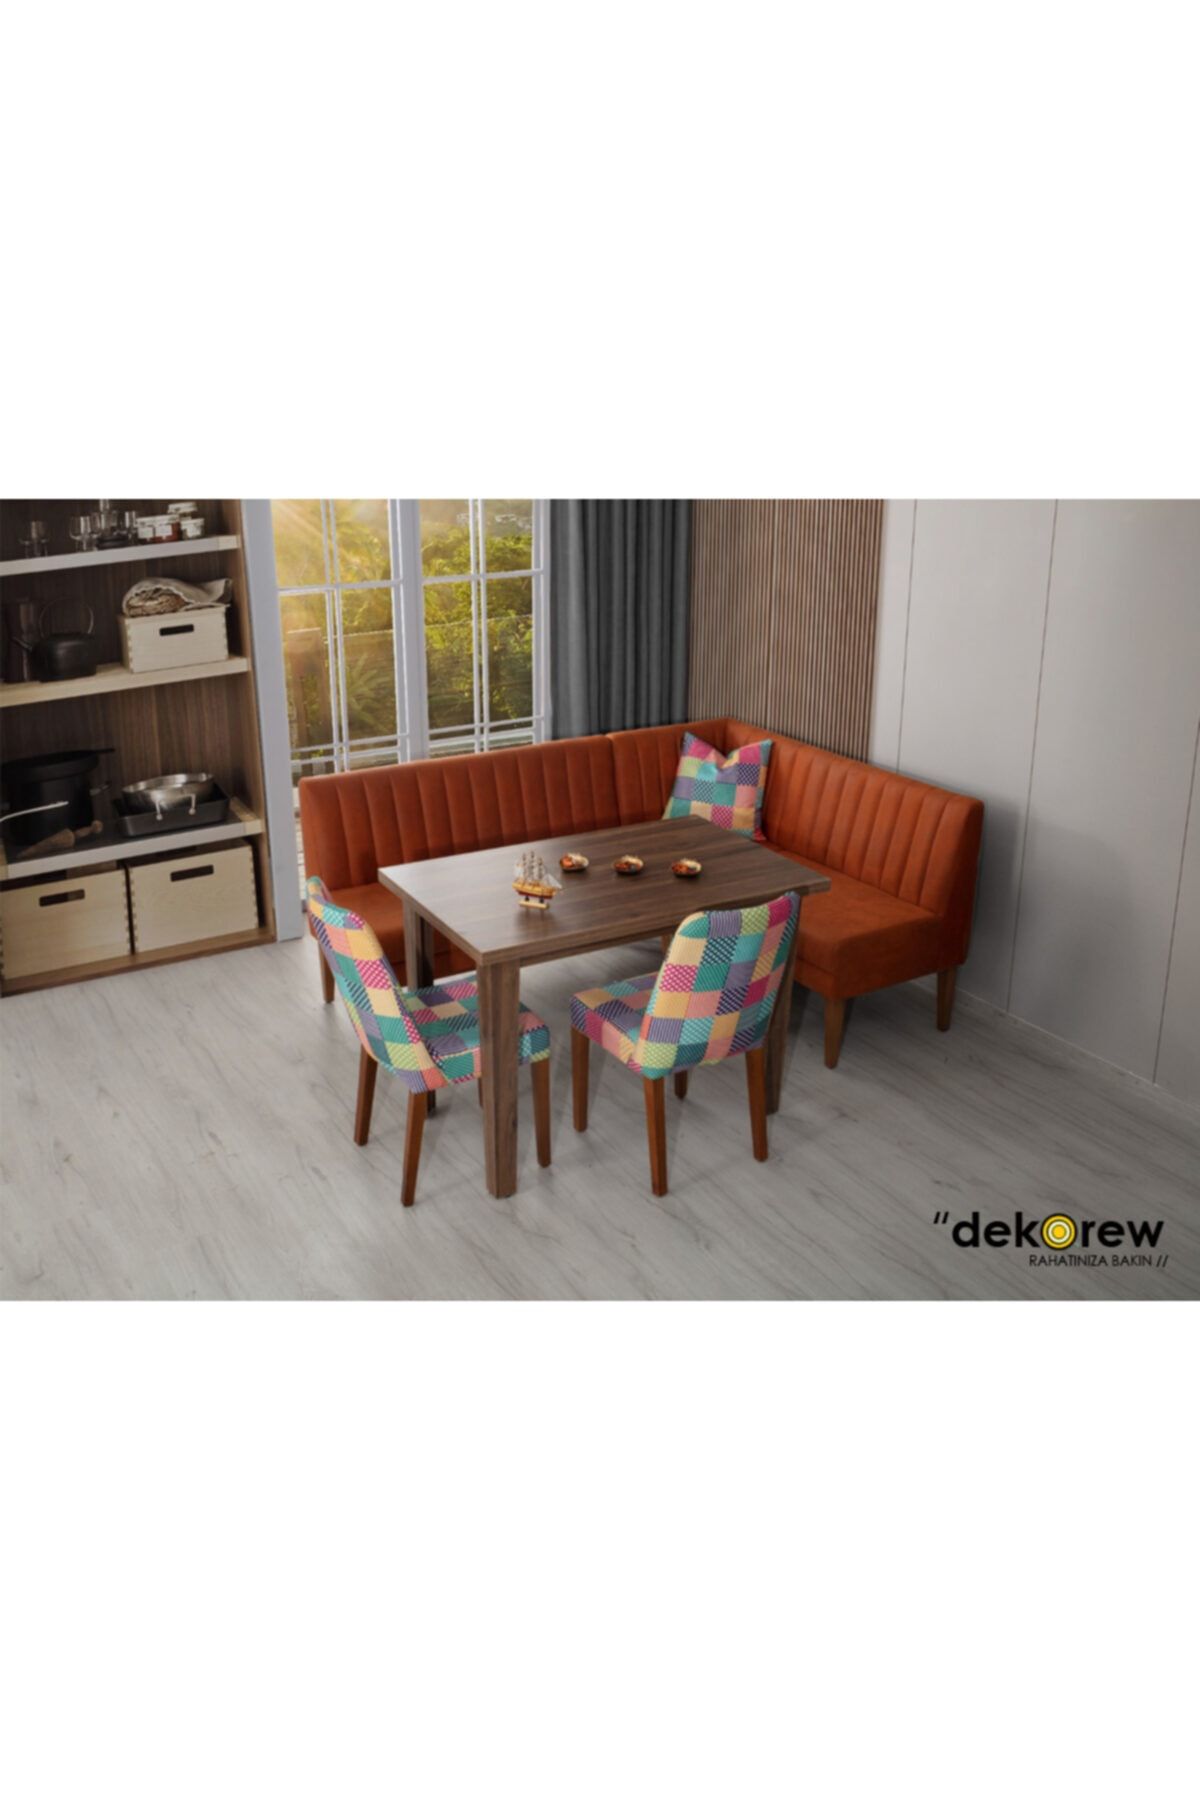 dekorew Loft Mutfak Köşe Masa Sandalye Takımı (ekbank)